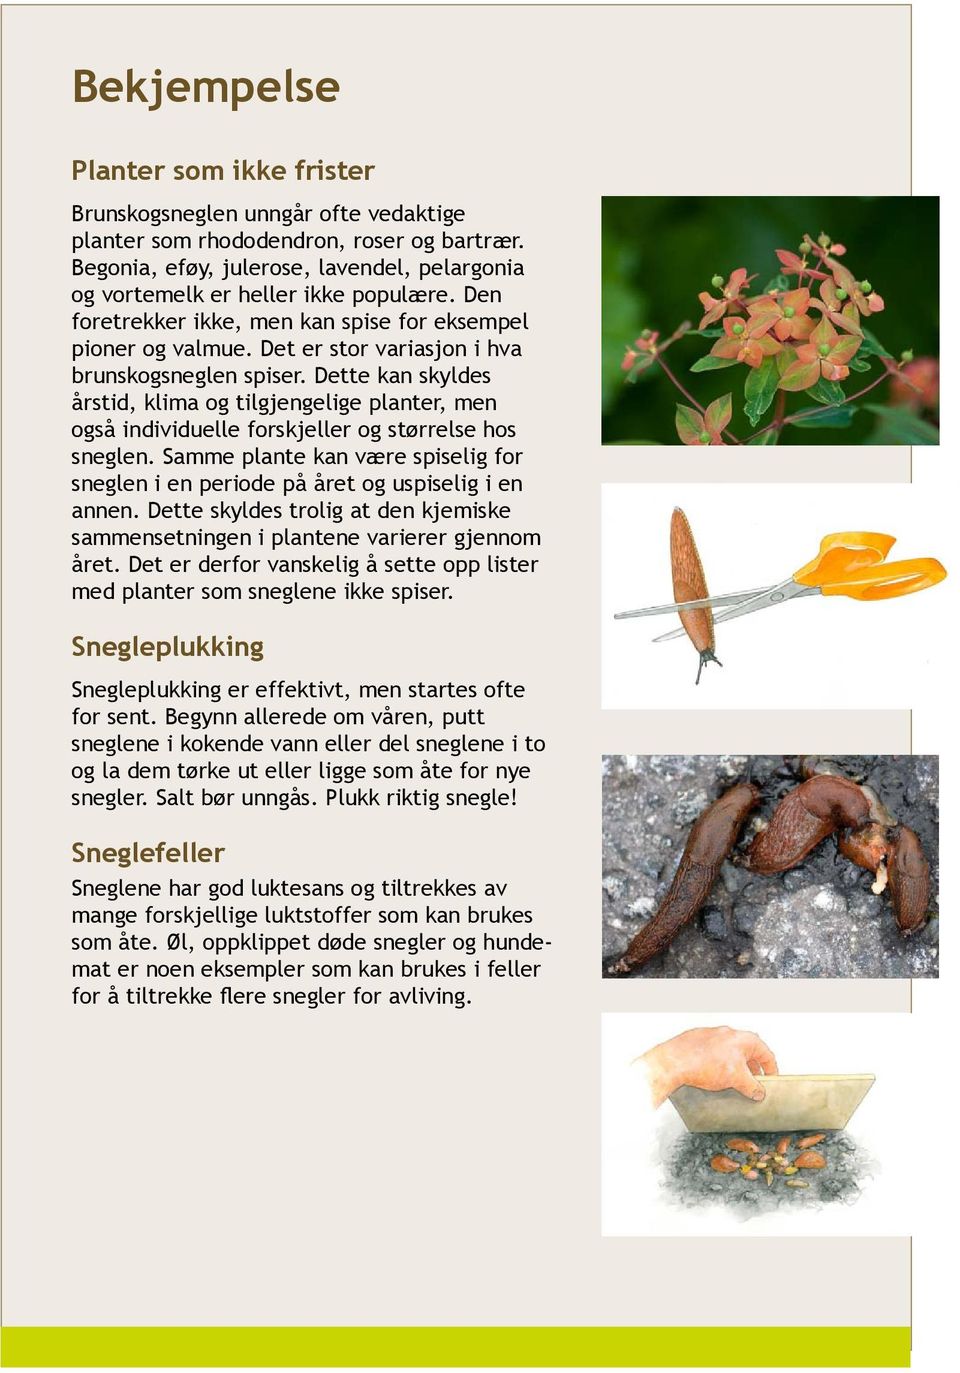 Det er stor variasjon i hva brunskogsneglen spiser. Dette kan skyldes årstid, klima og tilgjengelige planter, men også individuelle forskjeller og størrelse hos sneglen.